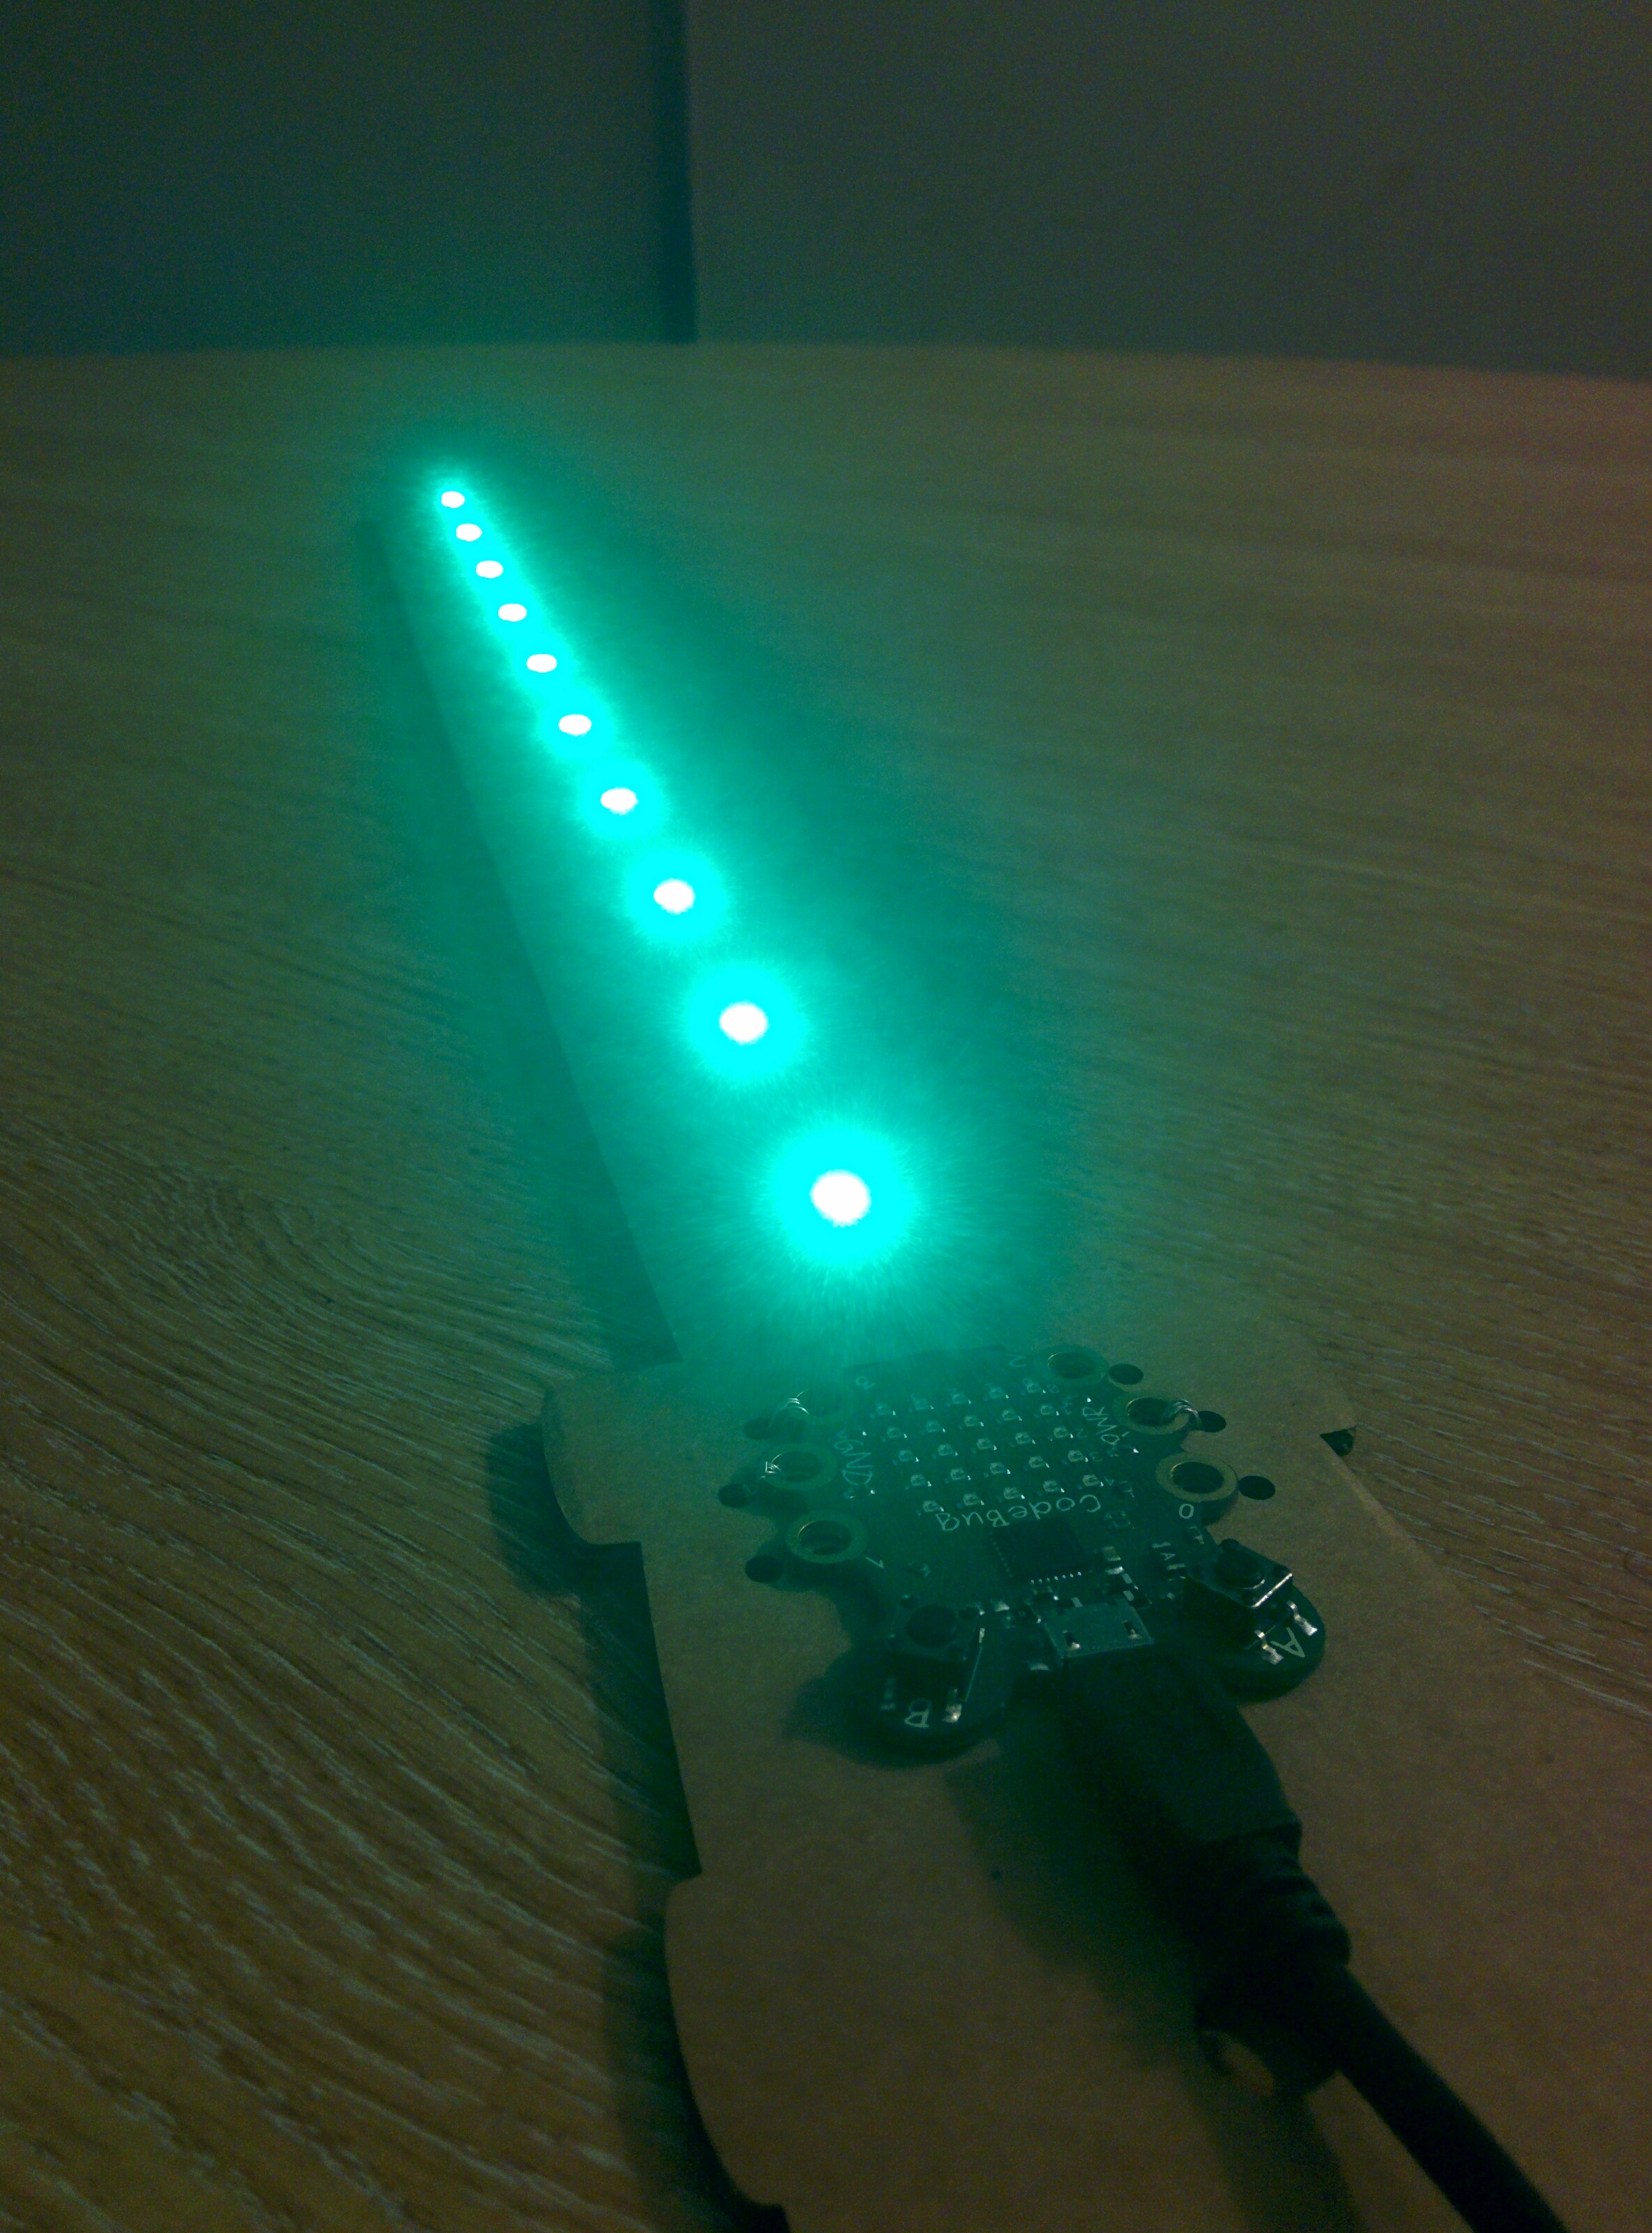 CodeBug Star Wars lightsaber